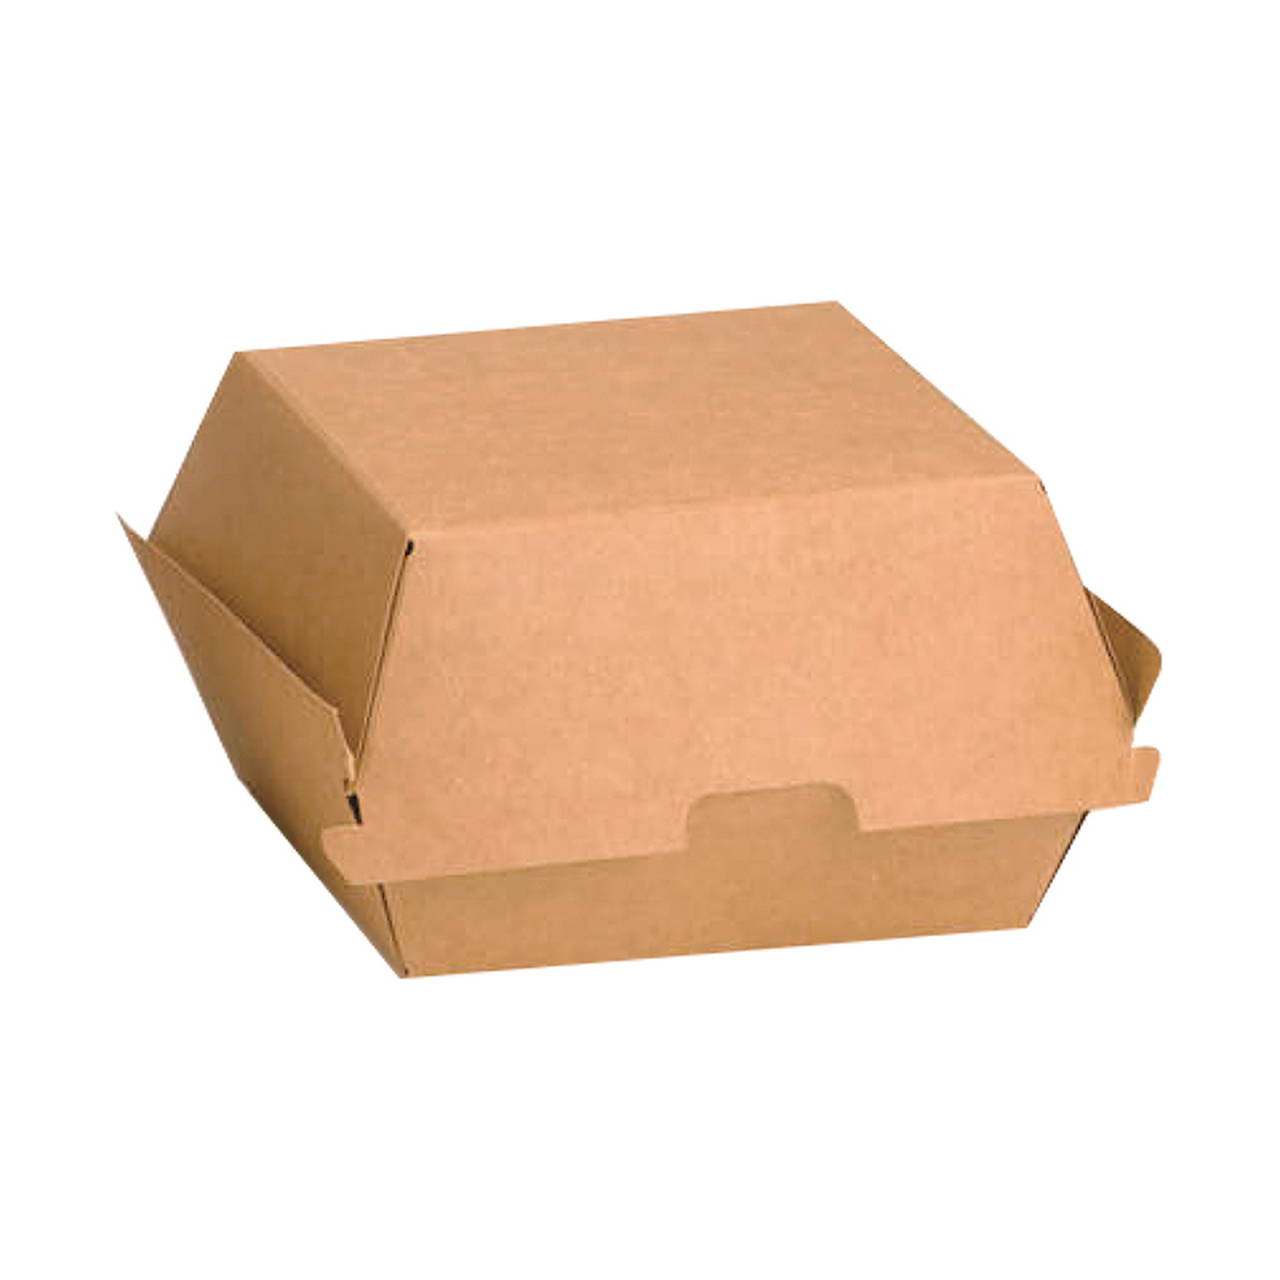 BIOZOYG Take Away Burger Box 200 Pezzi I Resistente Hamburger Box con Coperchio Alto a Cerniera I Hamburger Box in Cartone Kraft I To Go Burger in Cartone Marrone 16,8 x 15,4 x 9,8 cm I riciclabile 